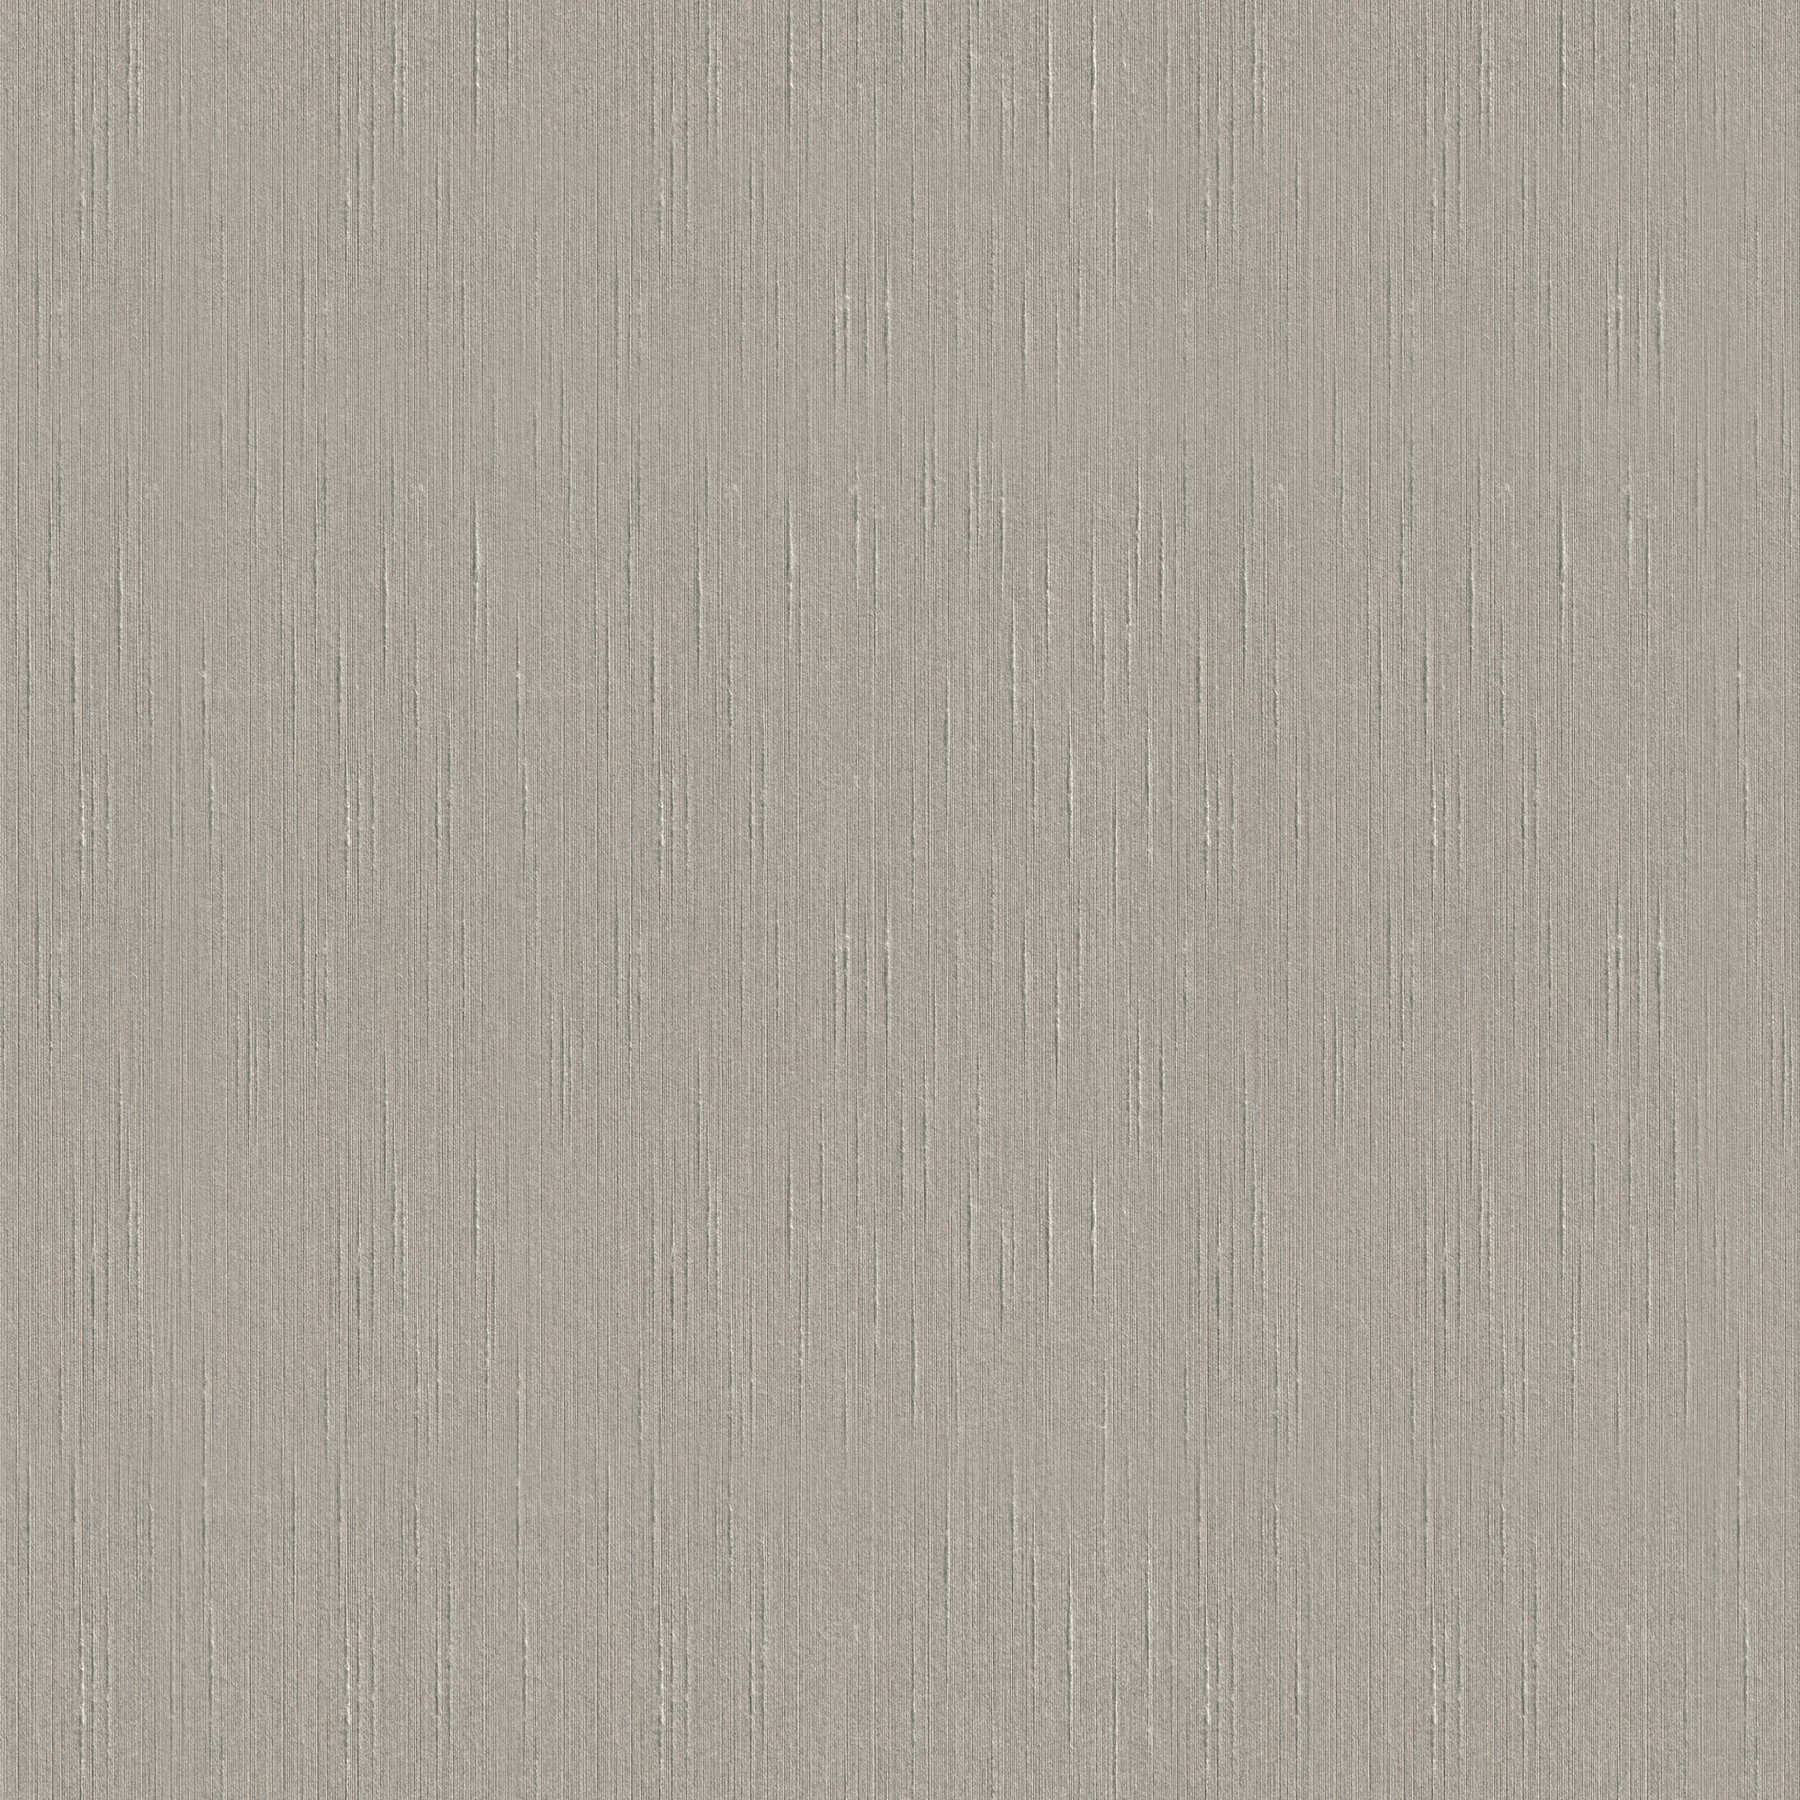 Non-woven wallpaper with textile texture & silk haptic - grey
